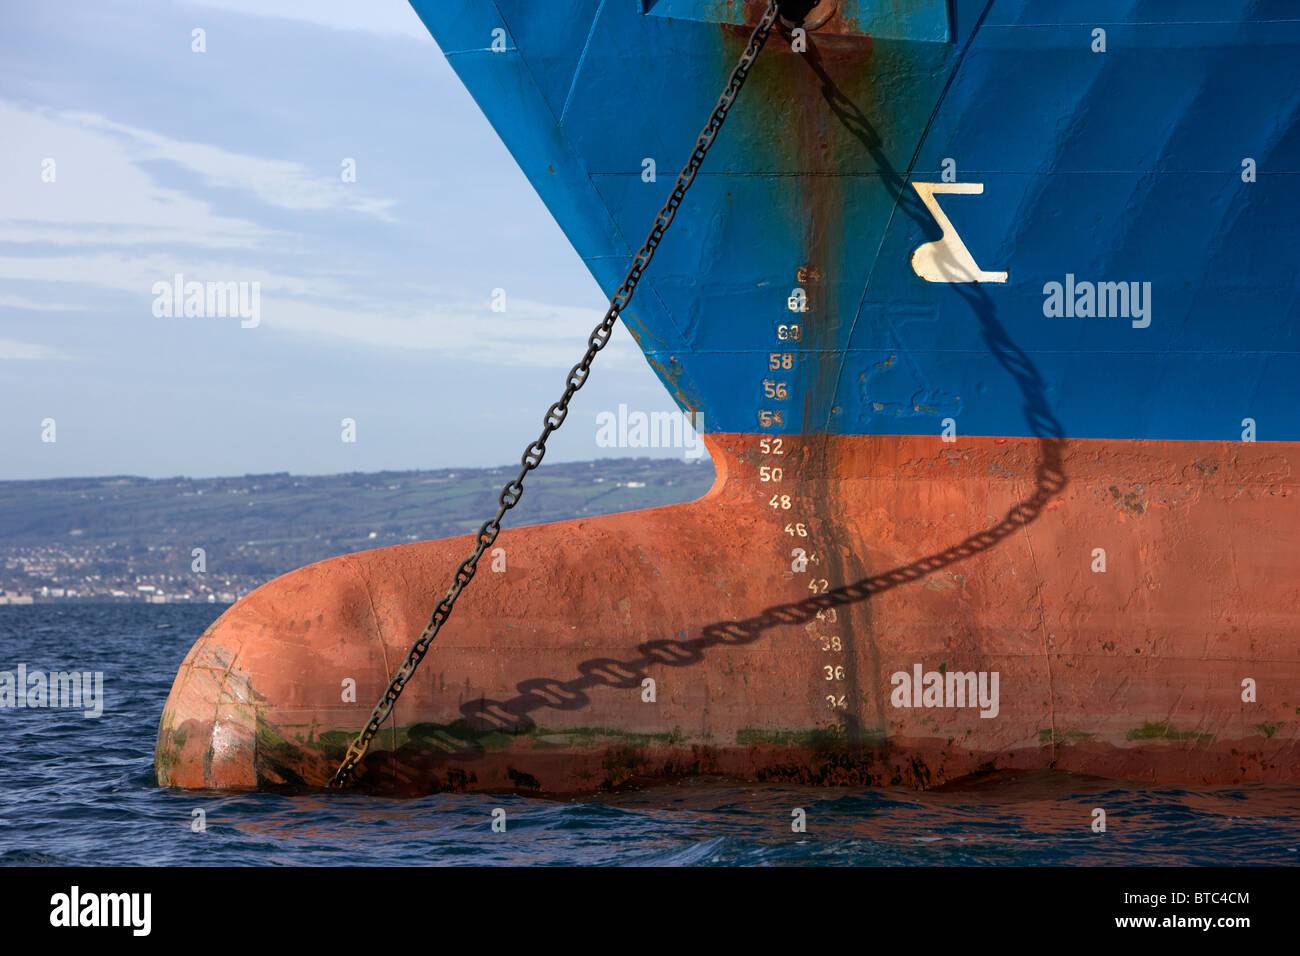 bulbous-bow-hull-markings-and-anchor-chain-of-coastal-deniz-dry-cargo-BTC4CM.jpg